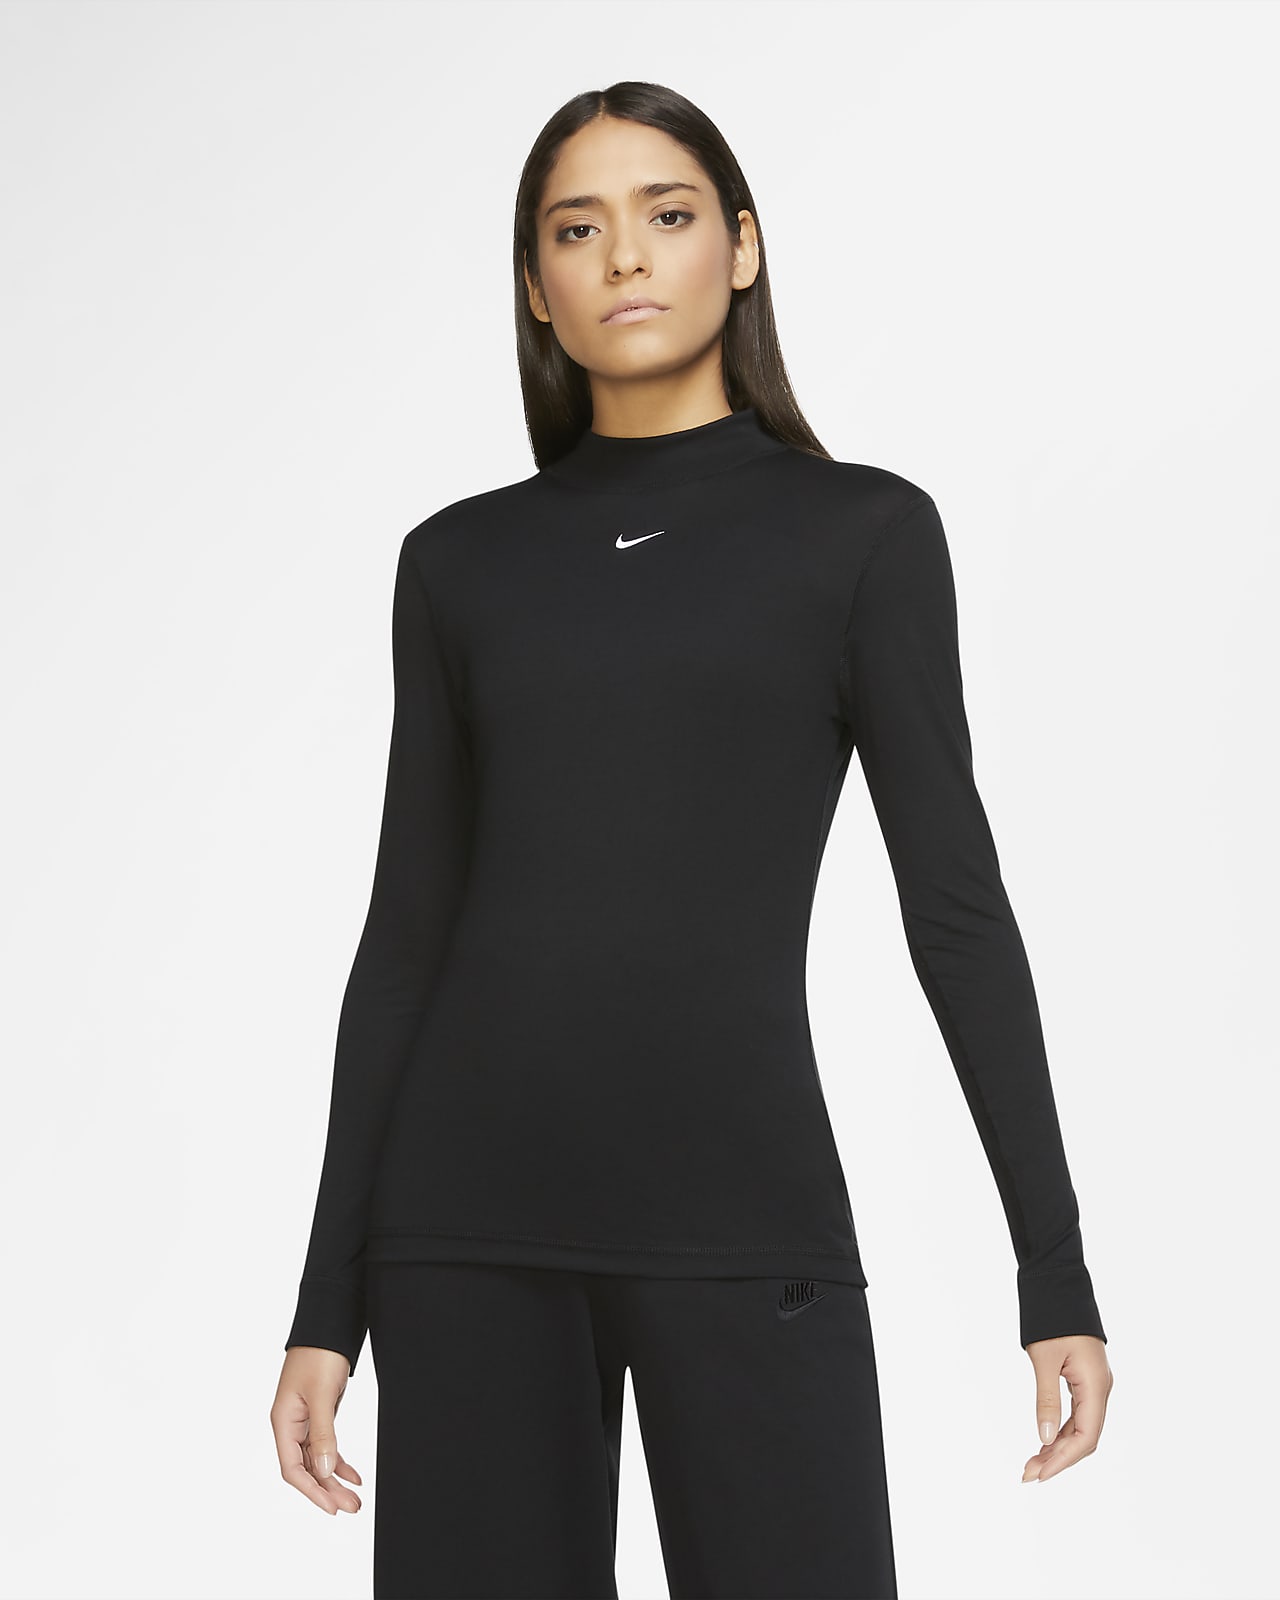 Nike Sportswear Women's Long-Sleeve Mock-Neck Top. Nike MA